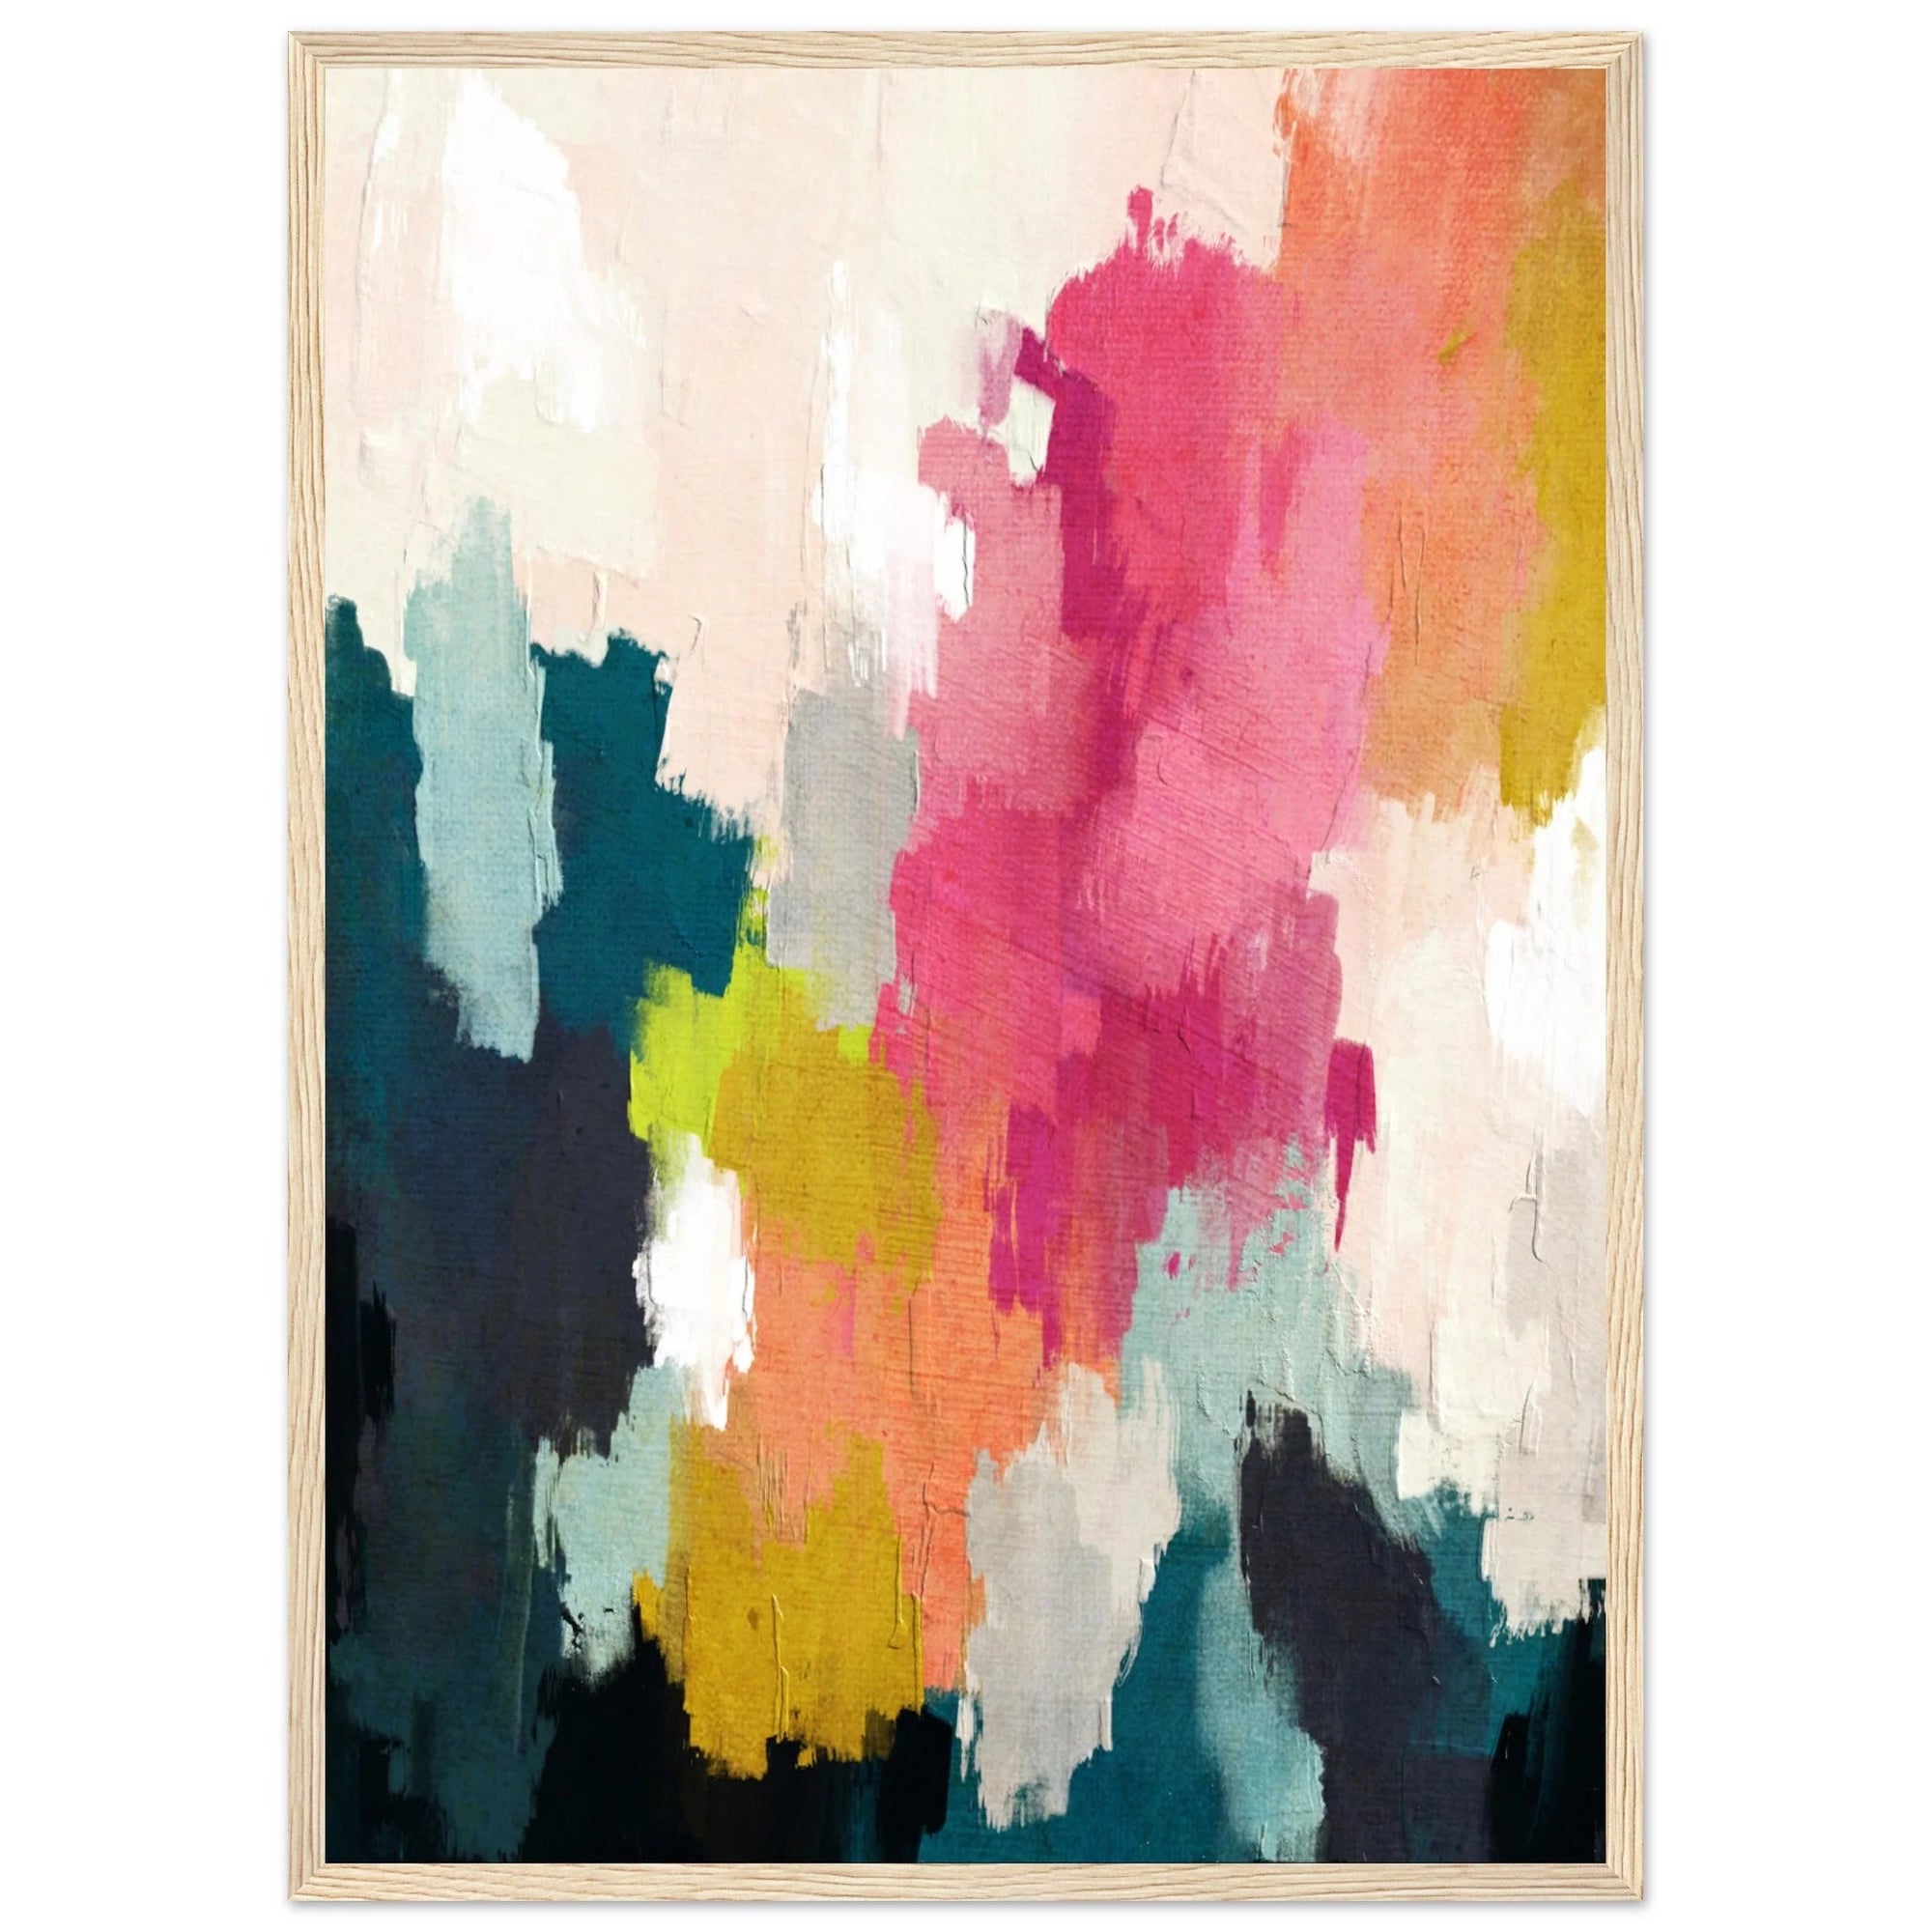 Tableau Coloré Abstrait - The Art Avenue